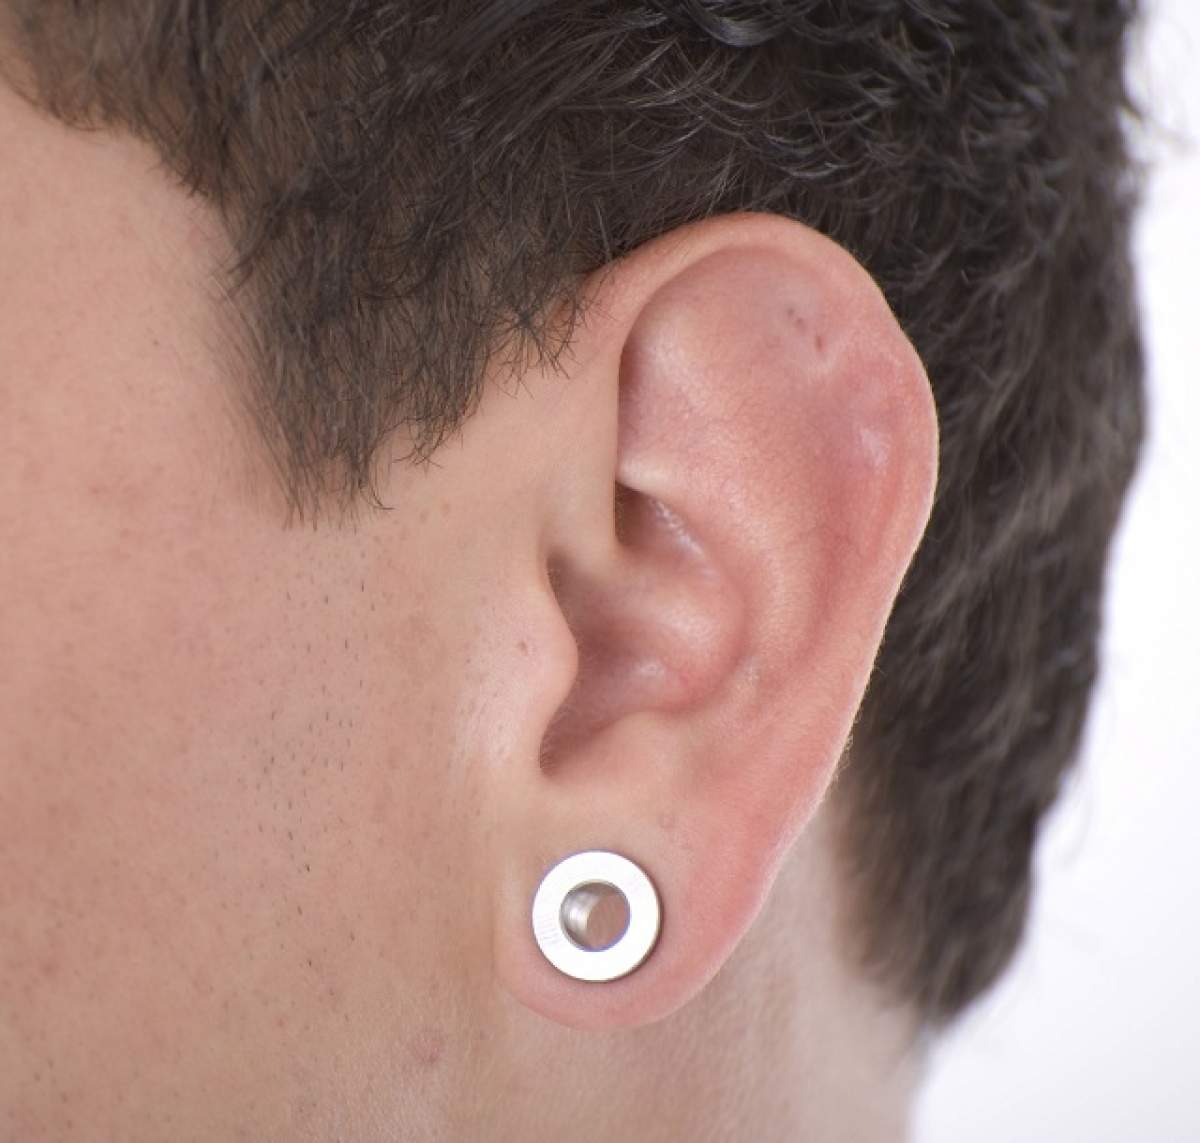 ÎNTREBAREA ZILEI - DUMINICĂ: Ai urechi de dac sau de roman? Ce spune forma urechilor despre tine?